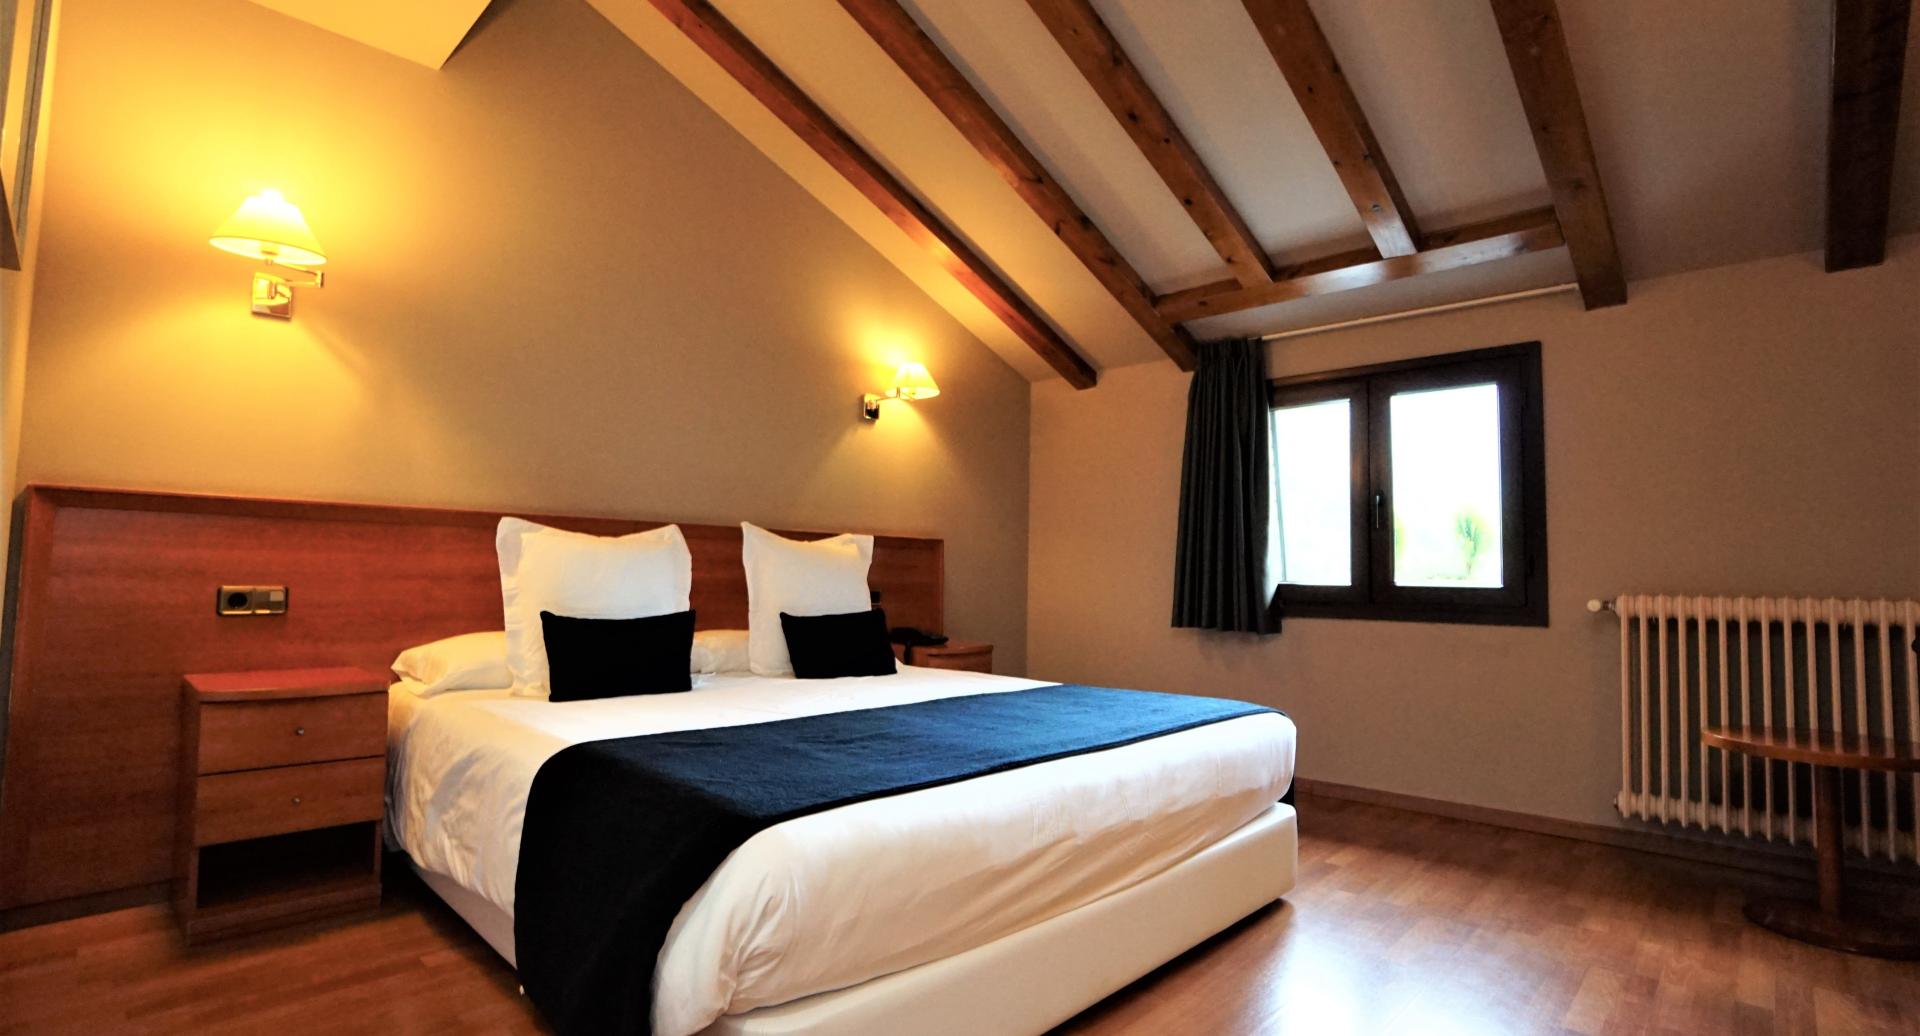 Rooms at Hotel & Spa Niunit